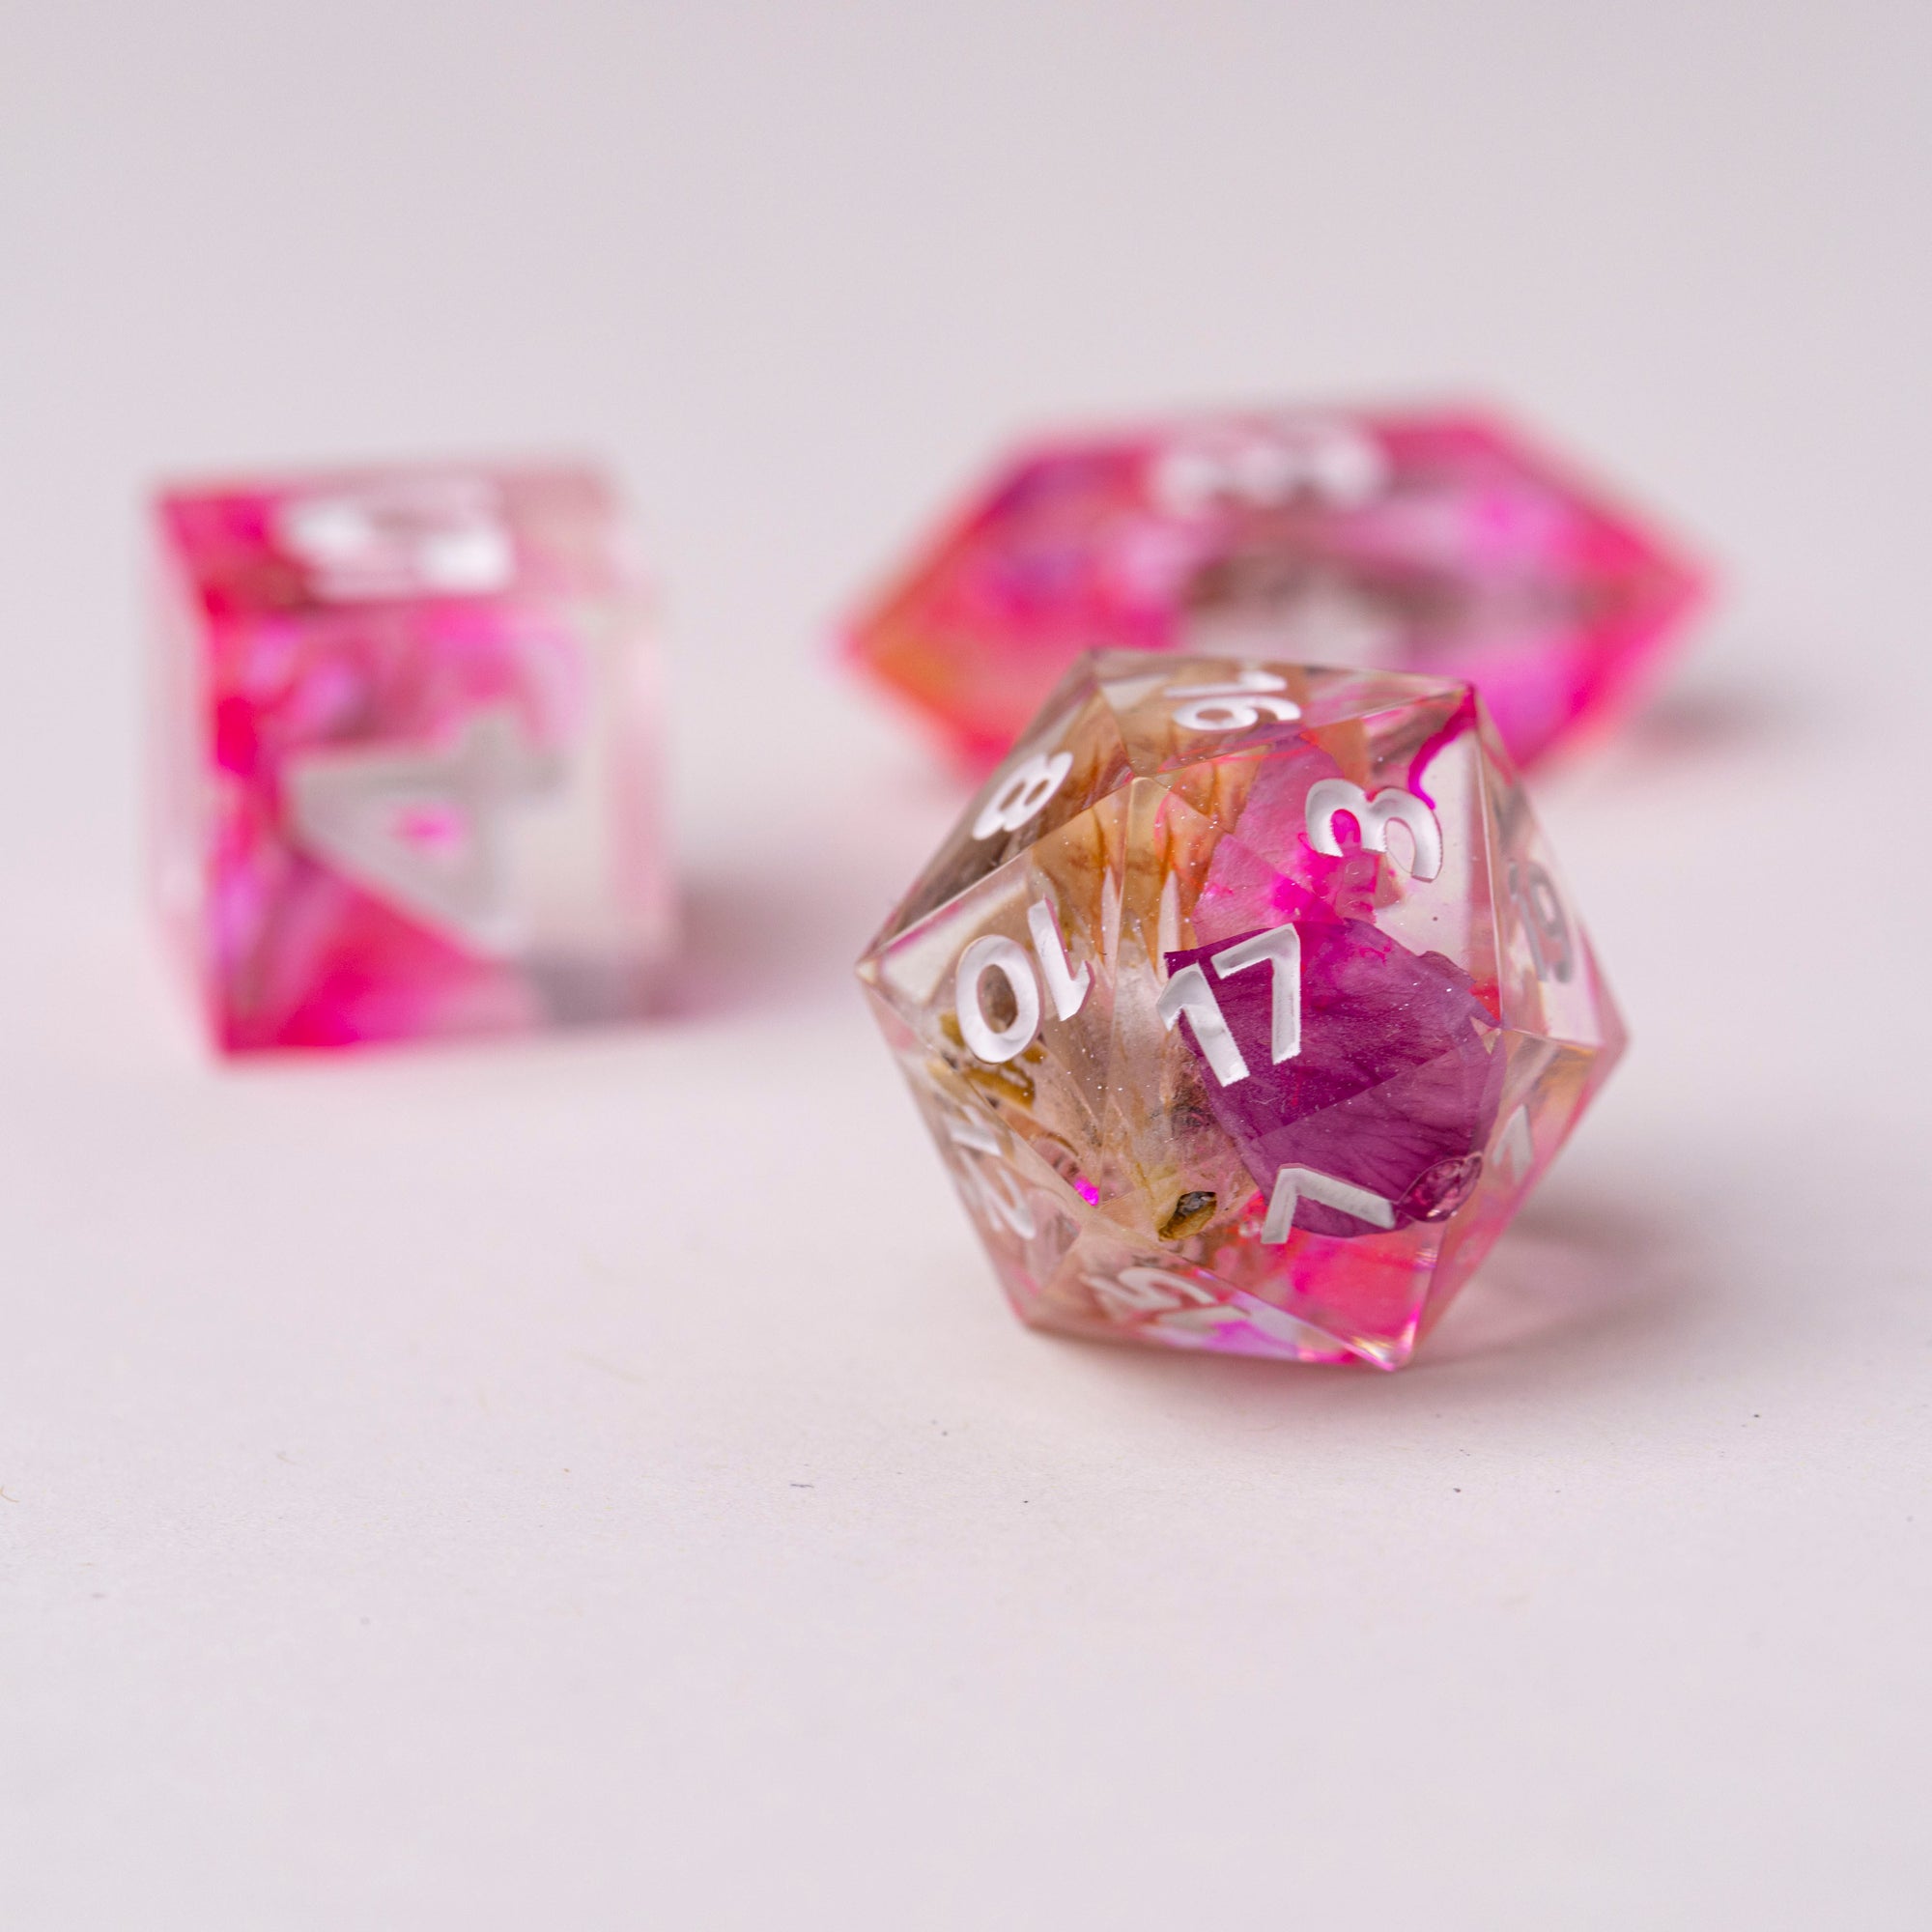 Pretty 'n Pink - D20 + D6 + D4 Dice Sets